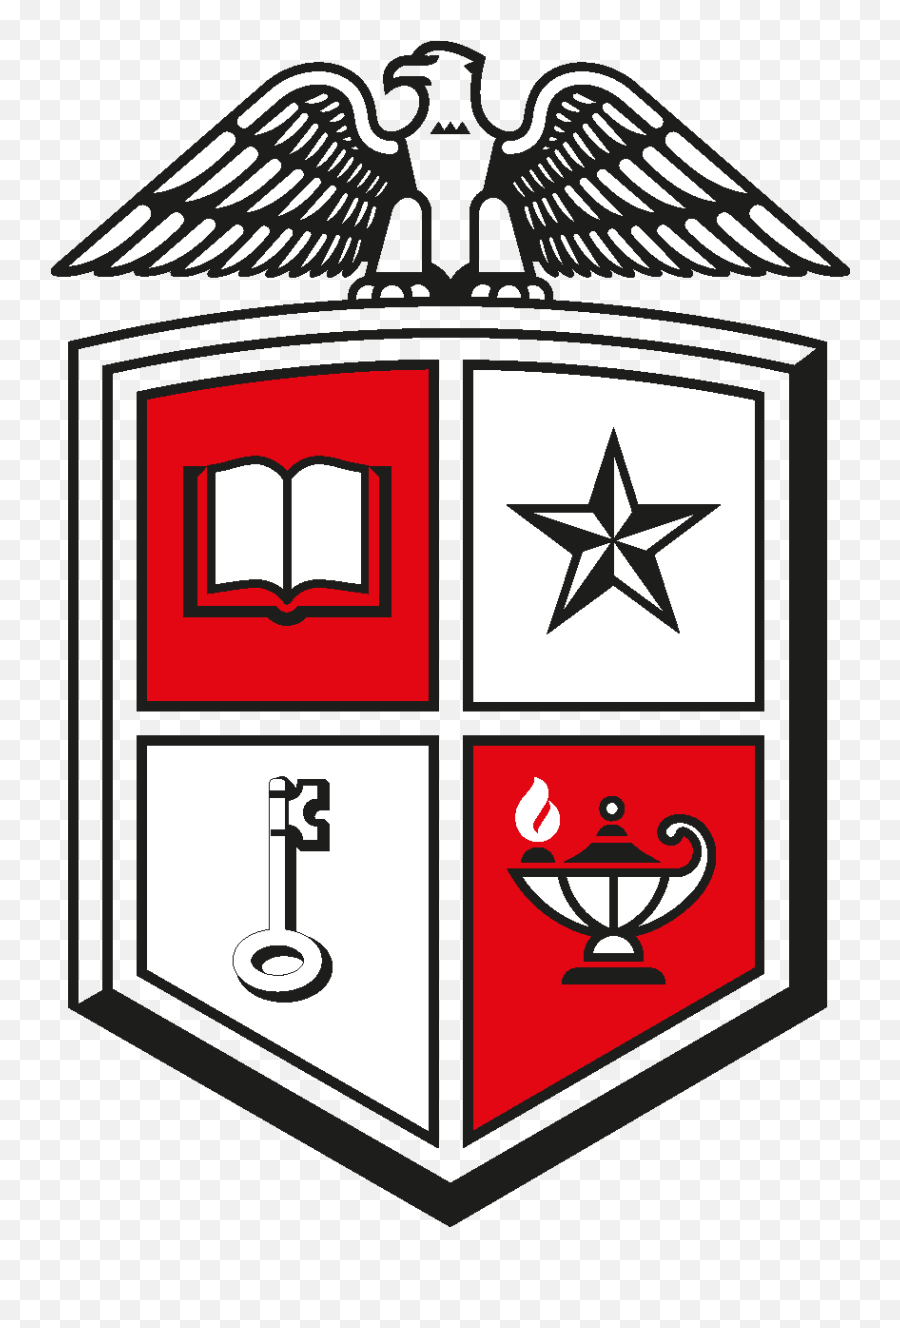 Ttu - Texas Tech University Coat Of Arms Emoji,Texas Tech Logo